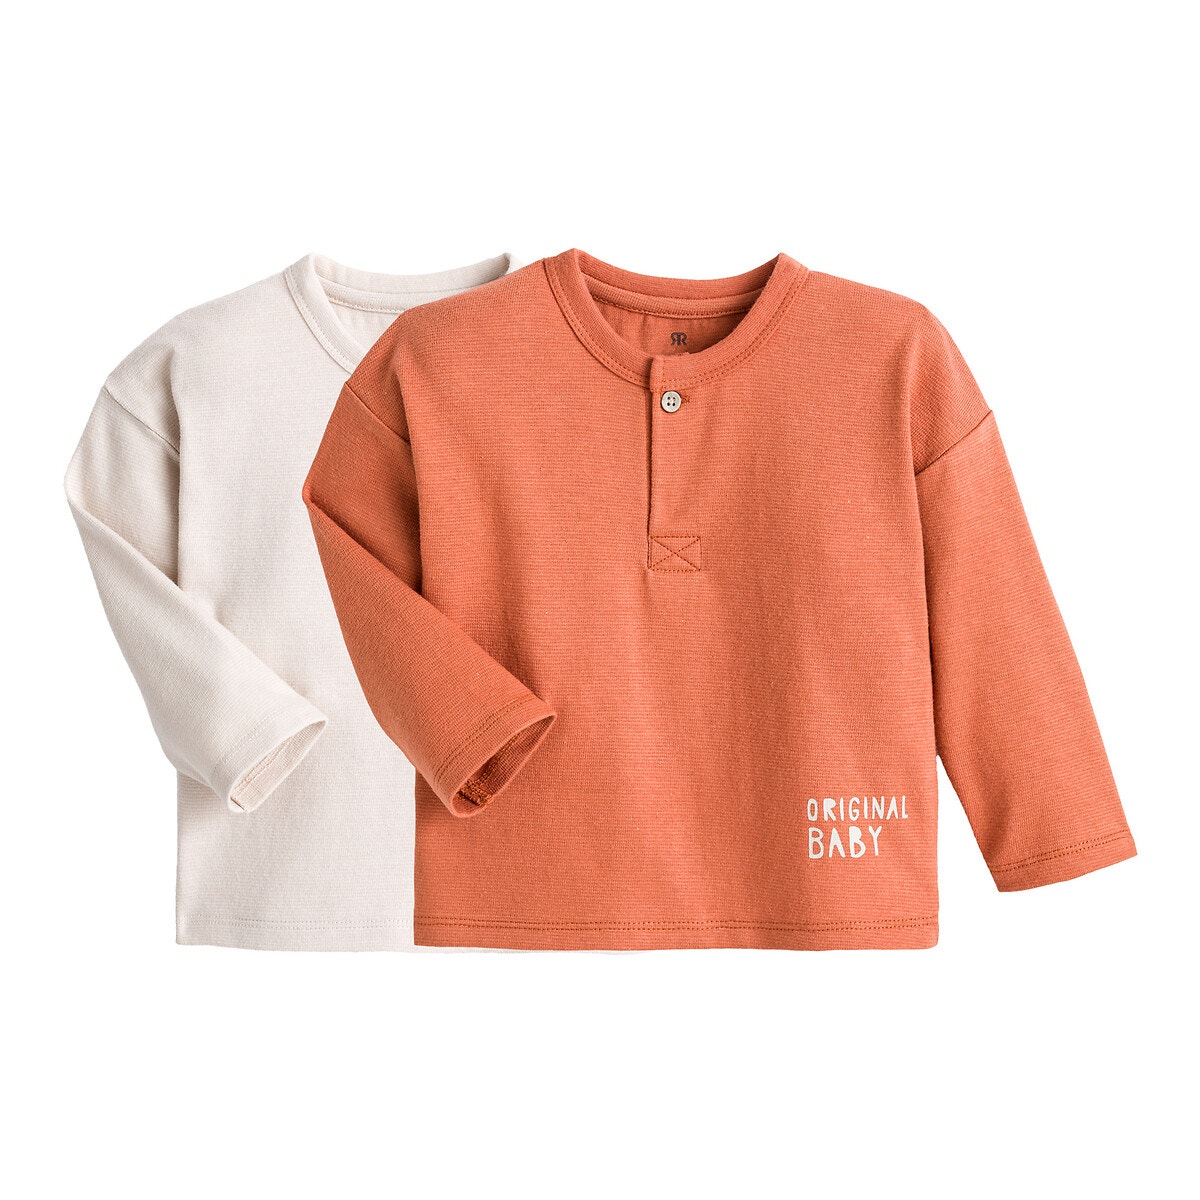 ΠΑΙΔΙ | Μπλούζες & Πουκάμισα | Τοπ Σετ 2 μπλούζες από οργανικό βαμβάκι, 1 μηνός - 4 ετών